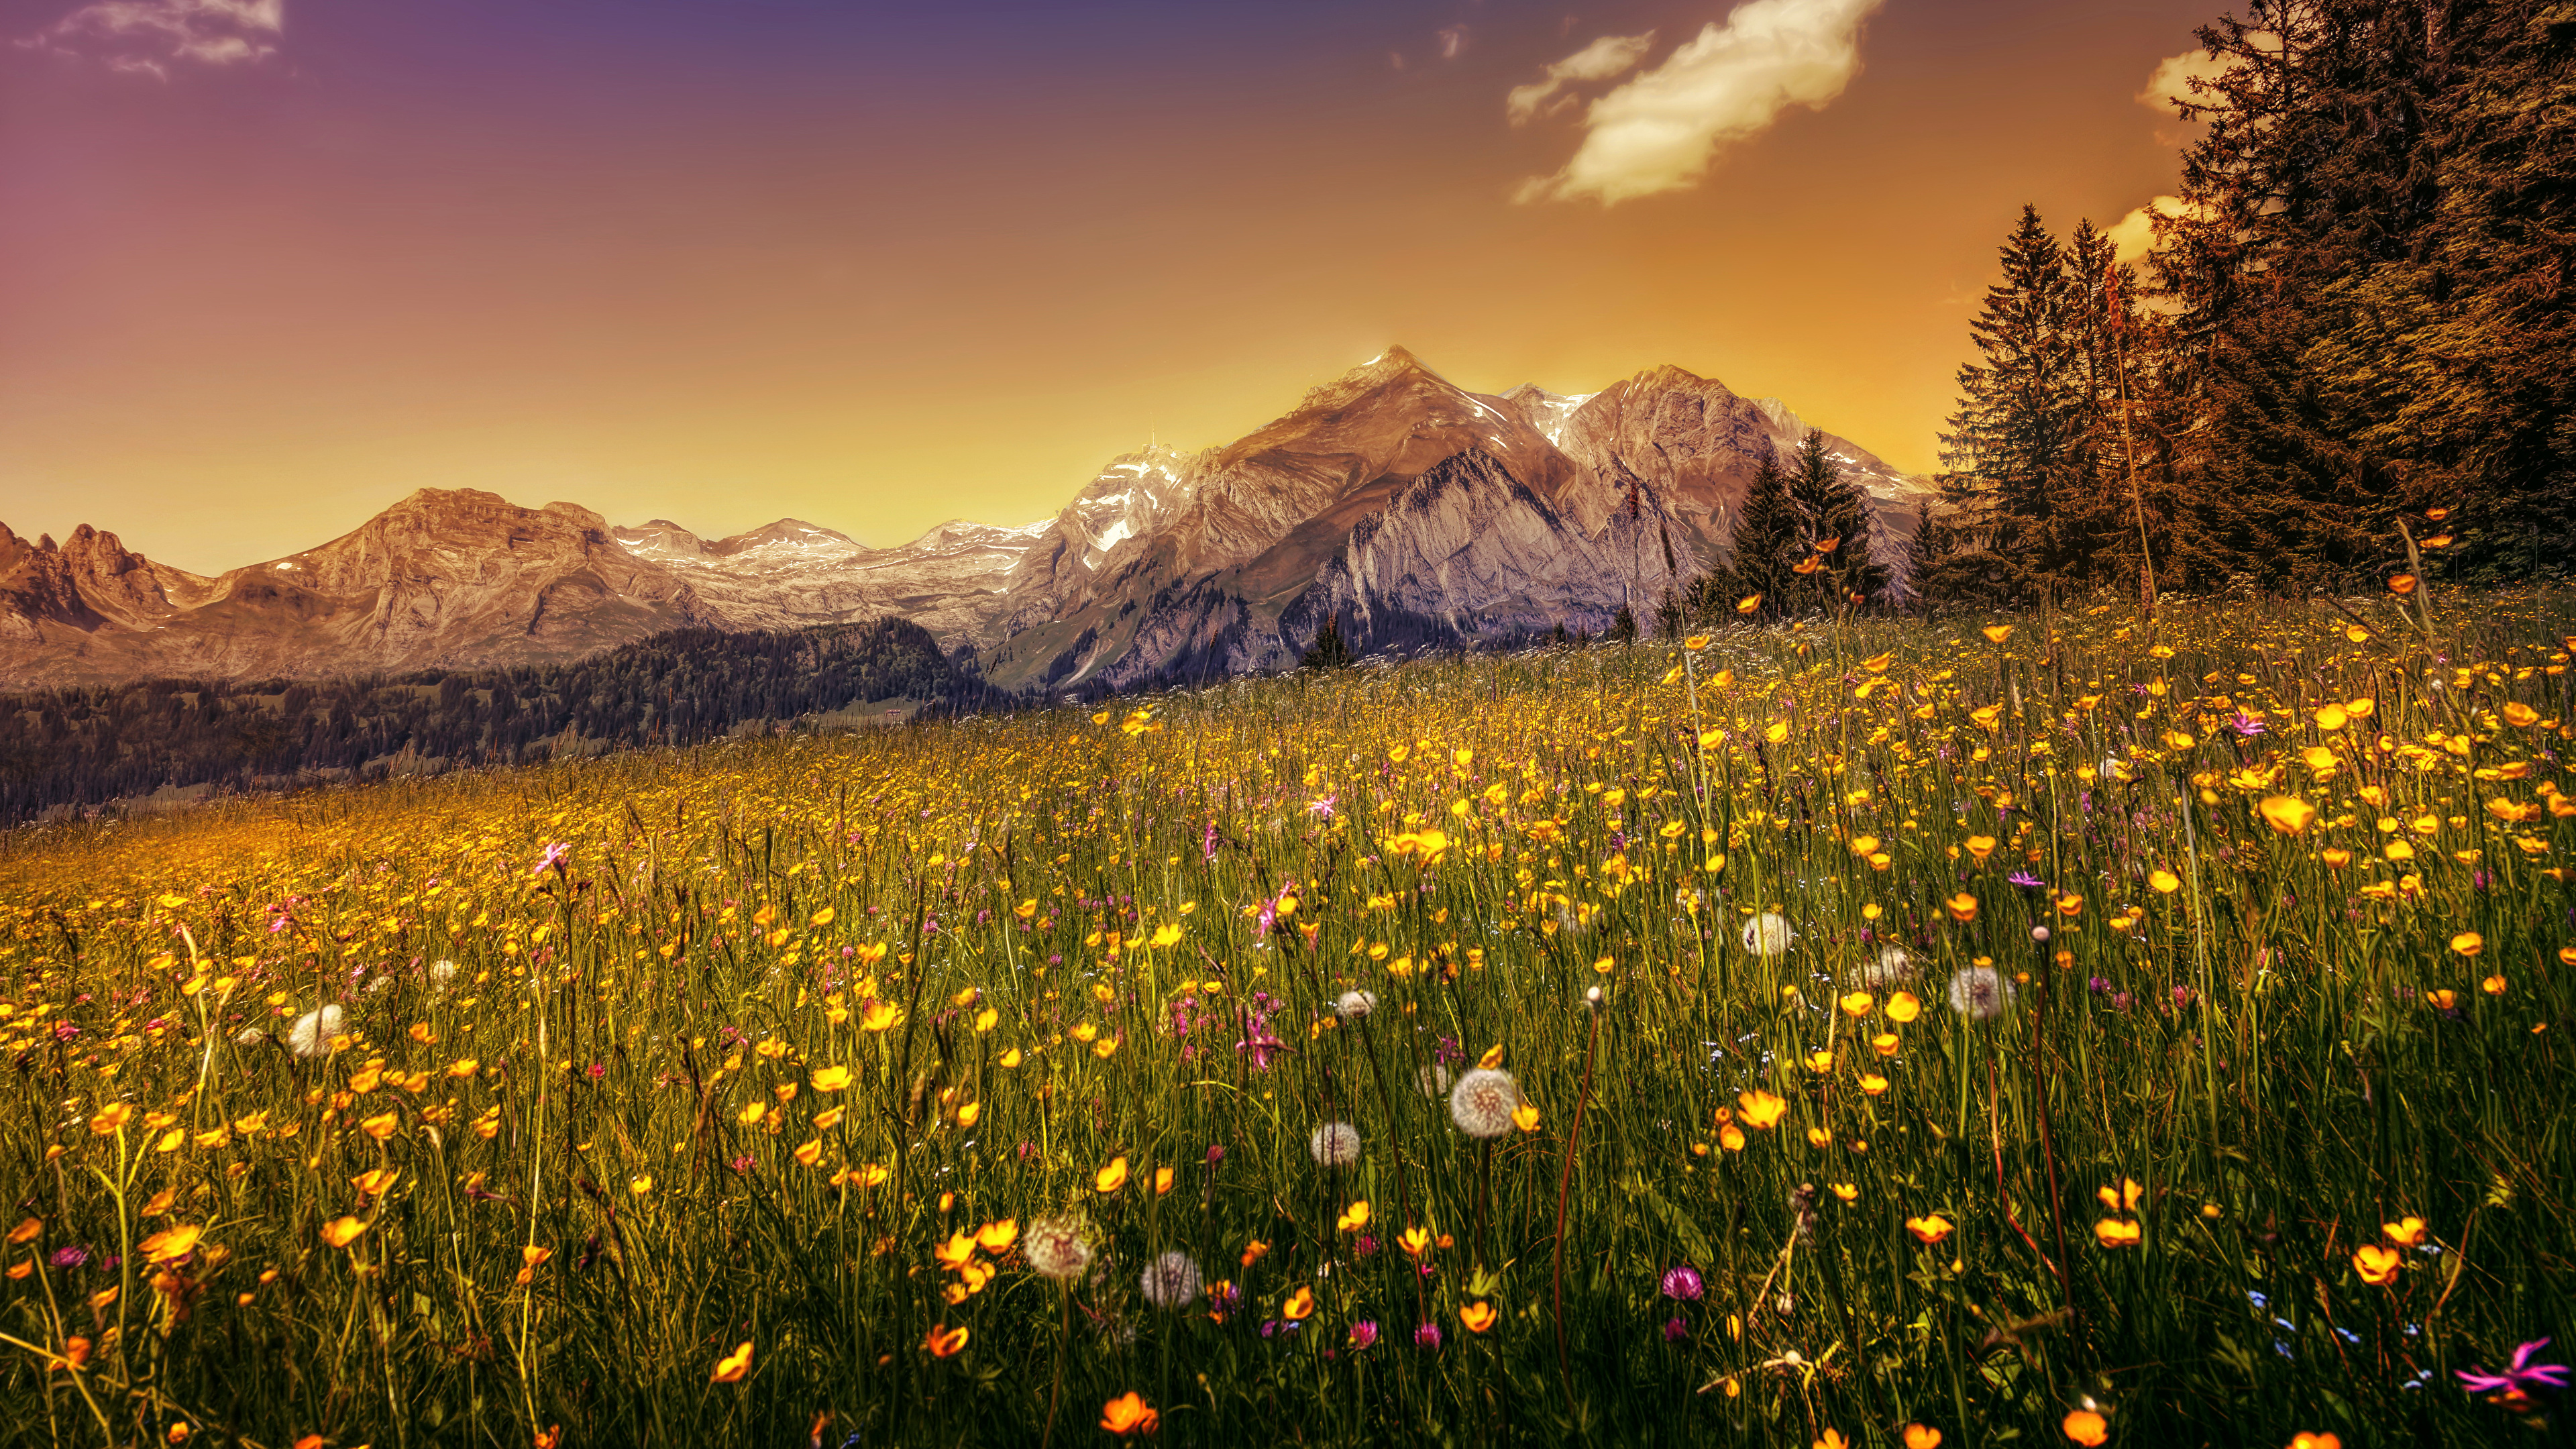 壁紙 3840x2160 スイス 山 タンポポ 風景写真 草原 ハイダイナミックレンジ合成 アルプス山脈 自然 ダウンロード 写真